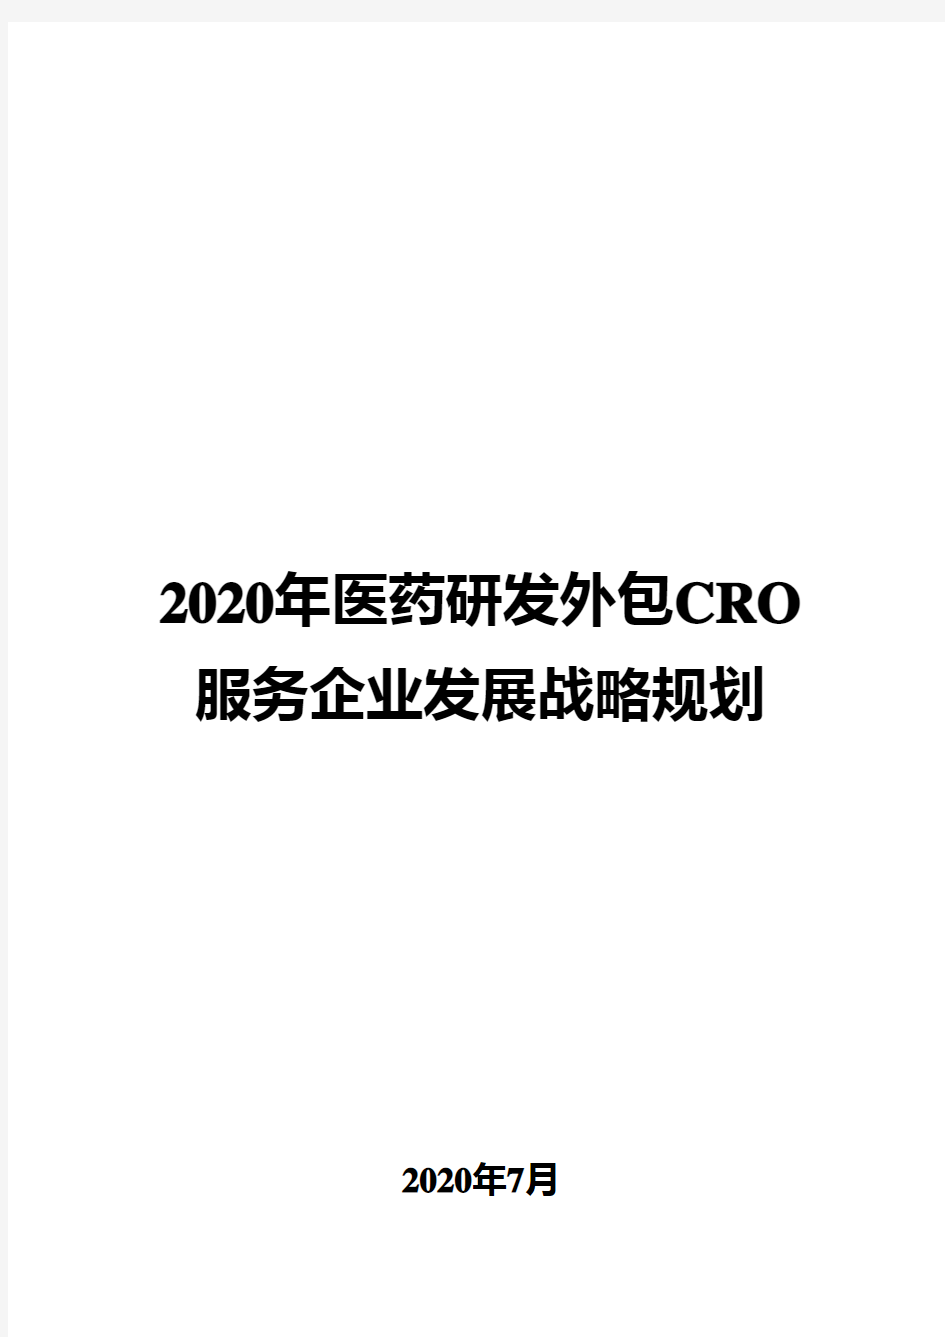 2020年医药研发外包CRO服务企业发展战略规划